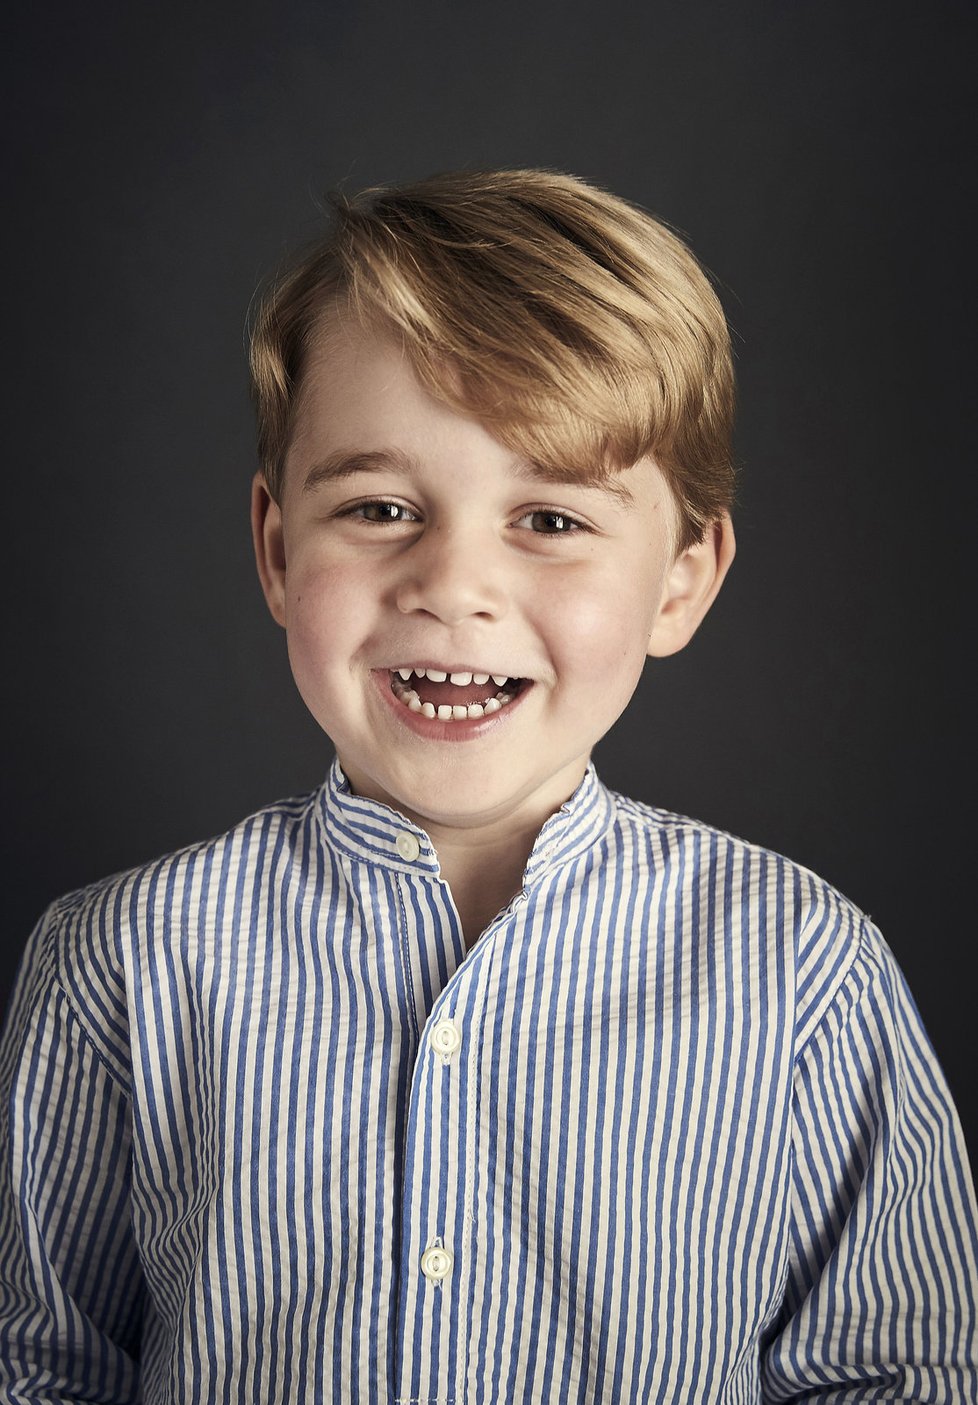 Oficiální portrét prince George u příležitosti jeho 4. narozenin